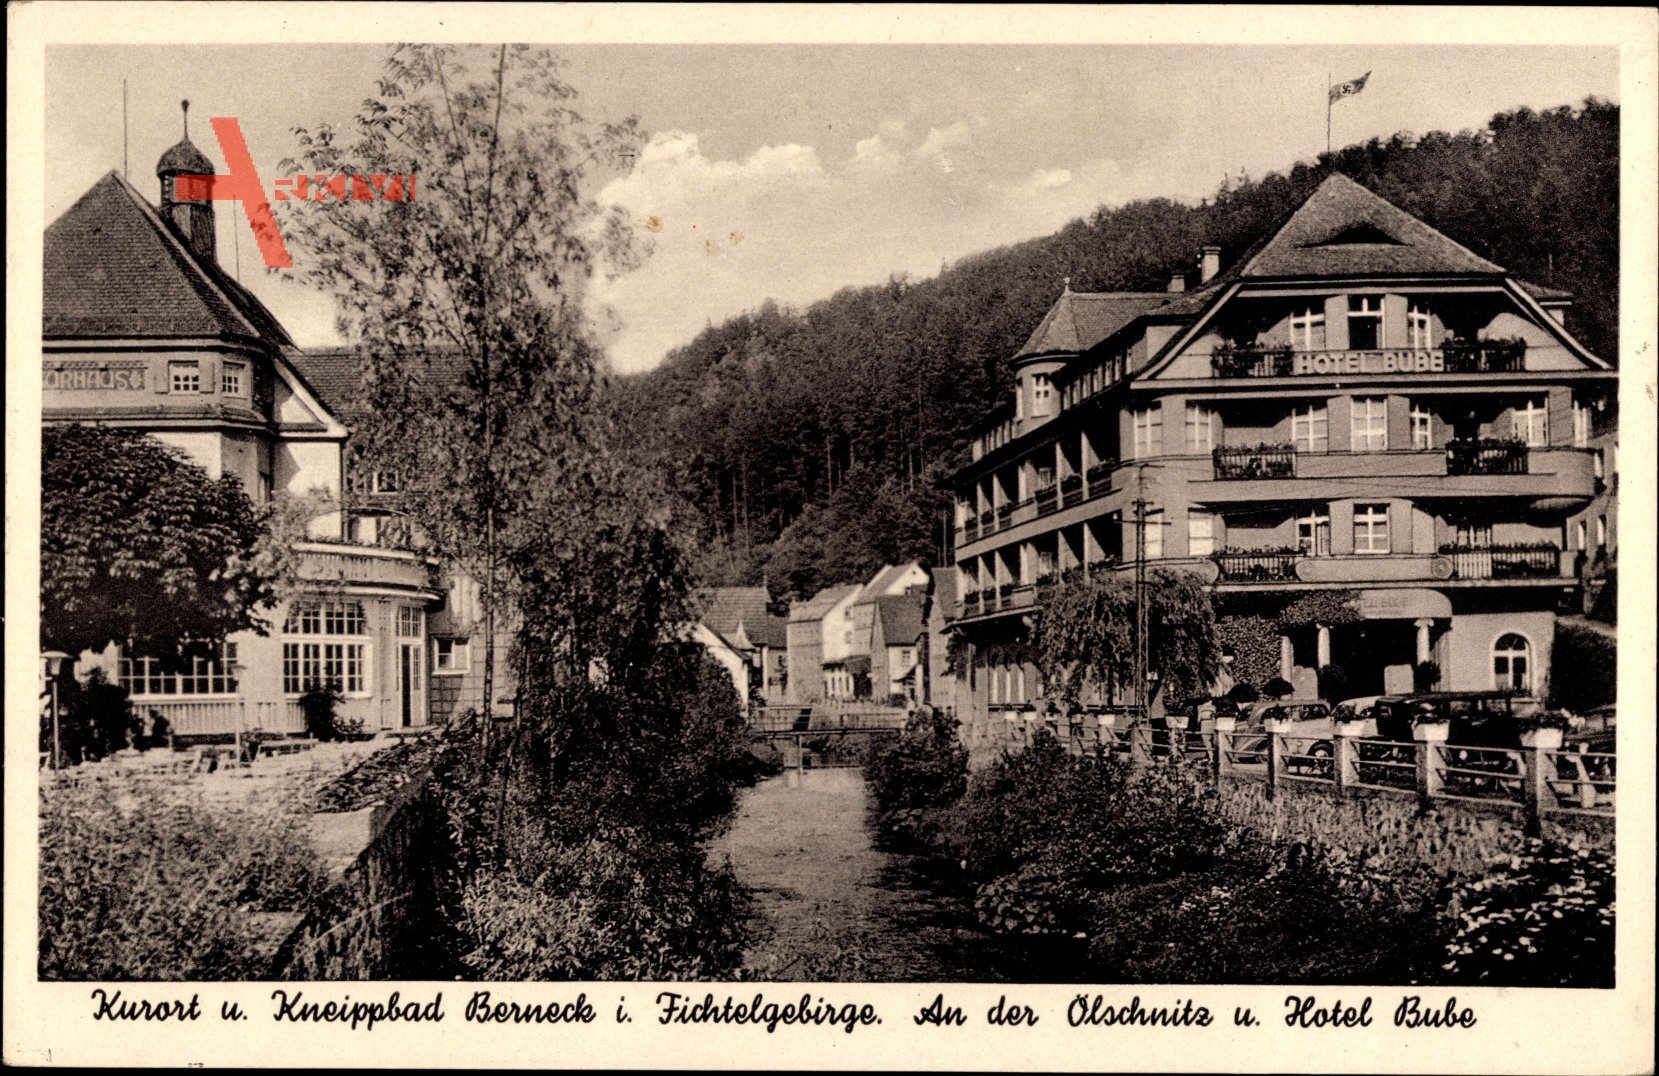 Bad Berneck im Fichtelgebirge Oberfranken, Partie an der Ölschnitz,Hotel Bube